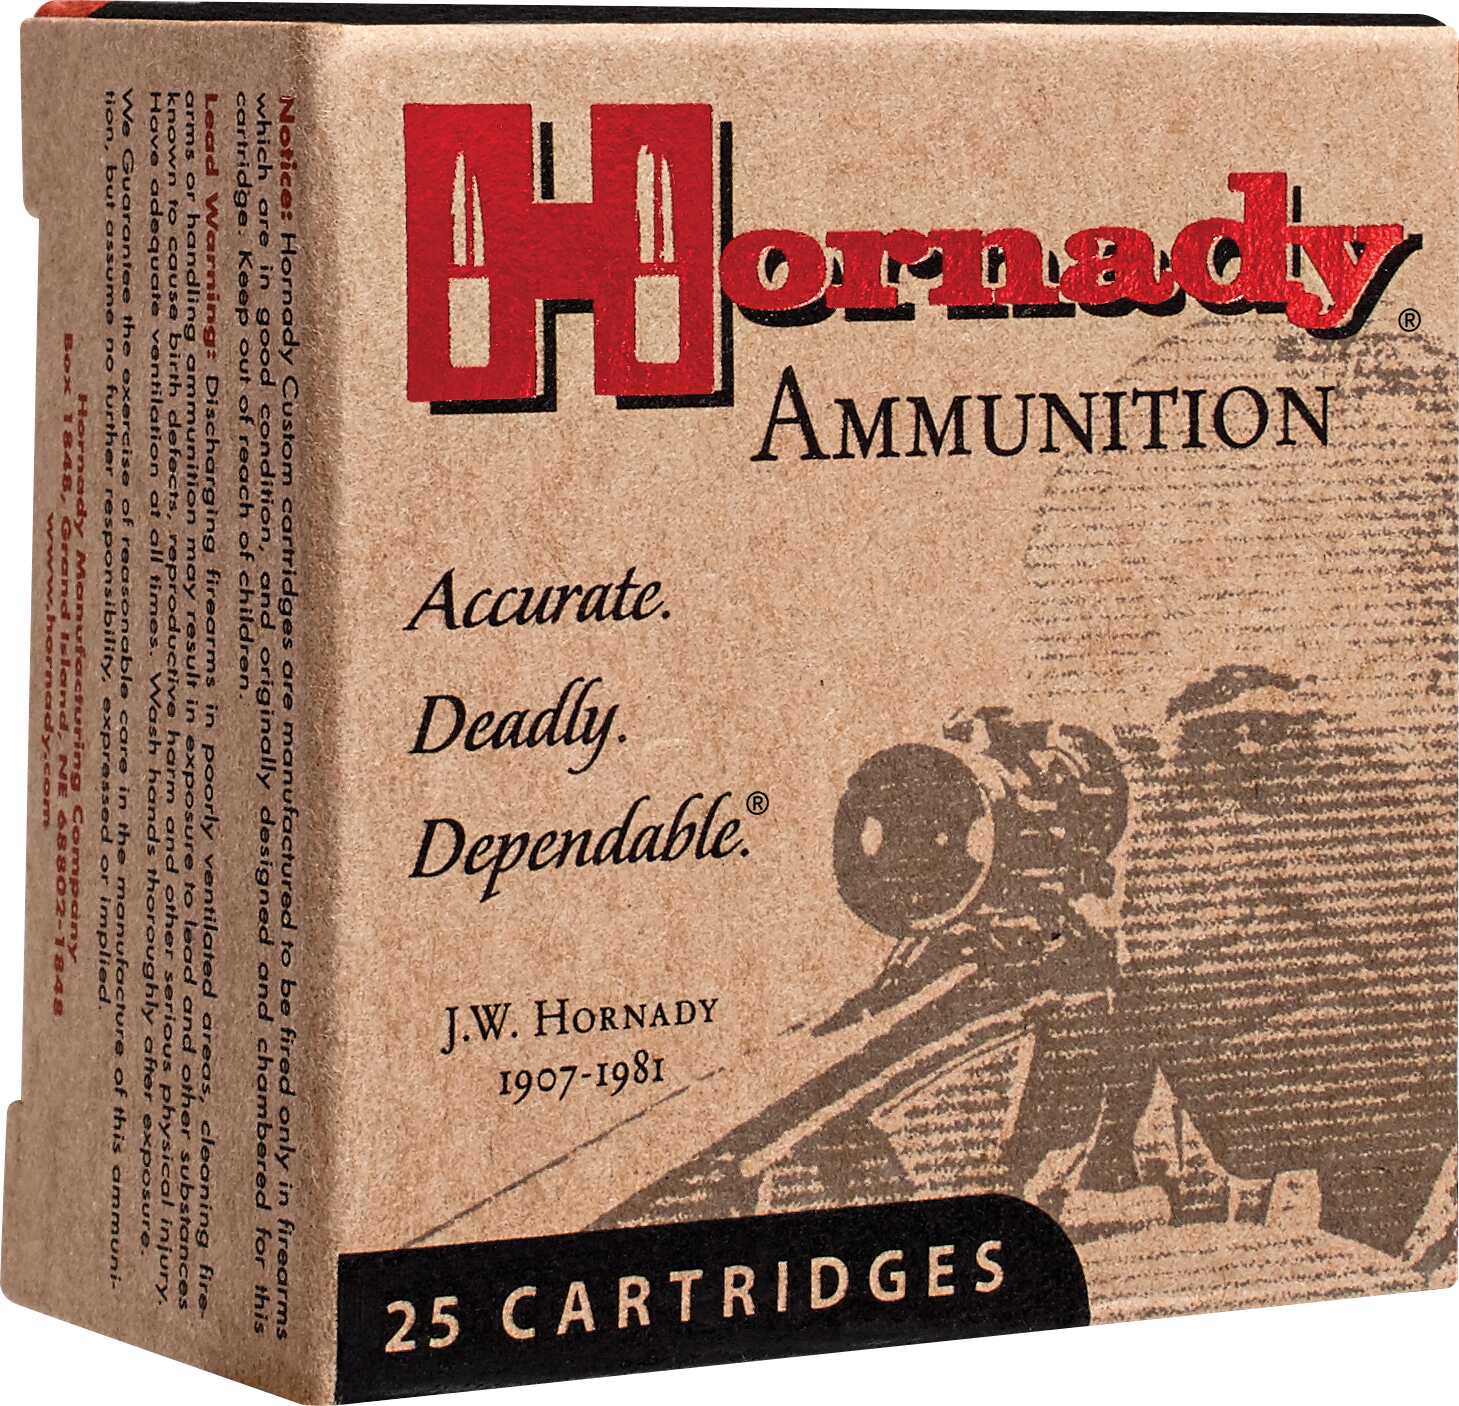 45 Long Colt By Hornady 255 Grain Cowboy Ammunition Per 20 Md: 9115